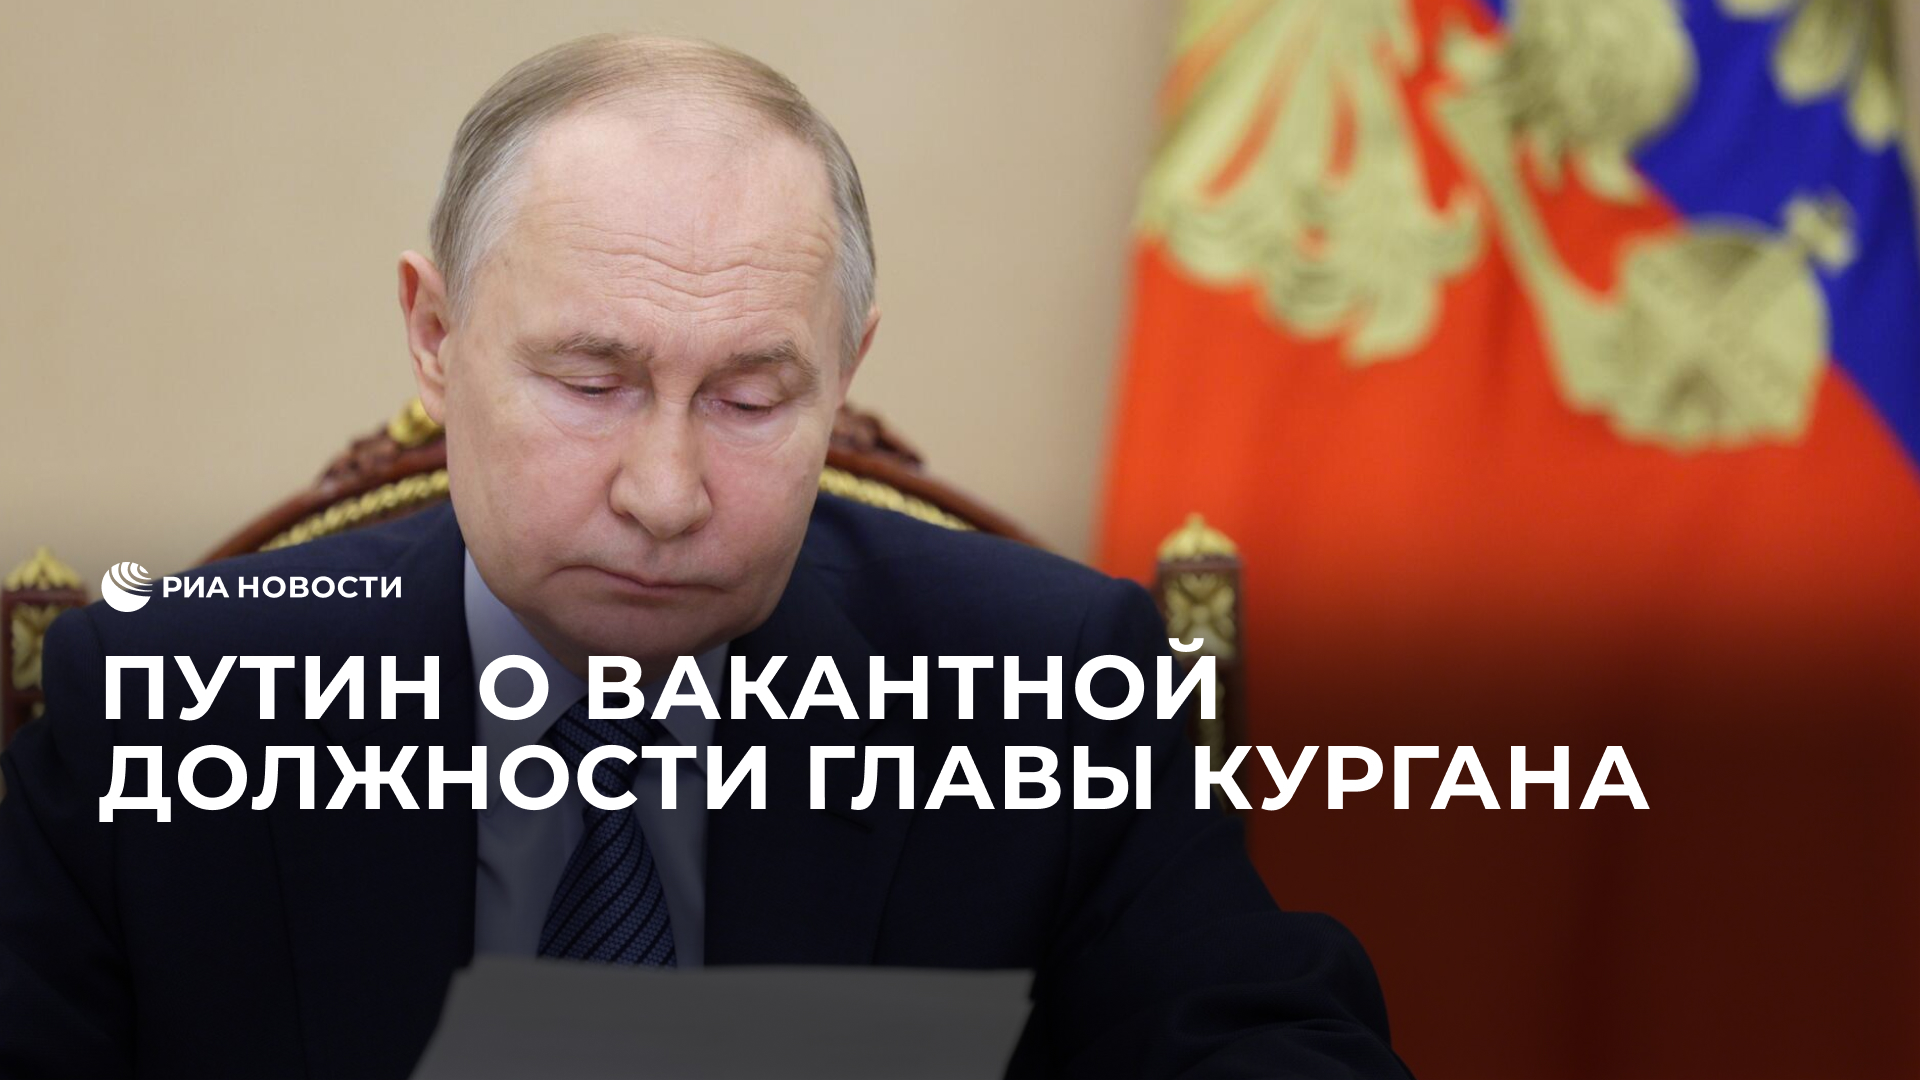 "Надо выборы организовать нормально" – Путин о вакантной должности главы Кургана